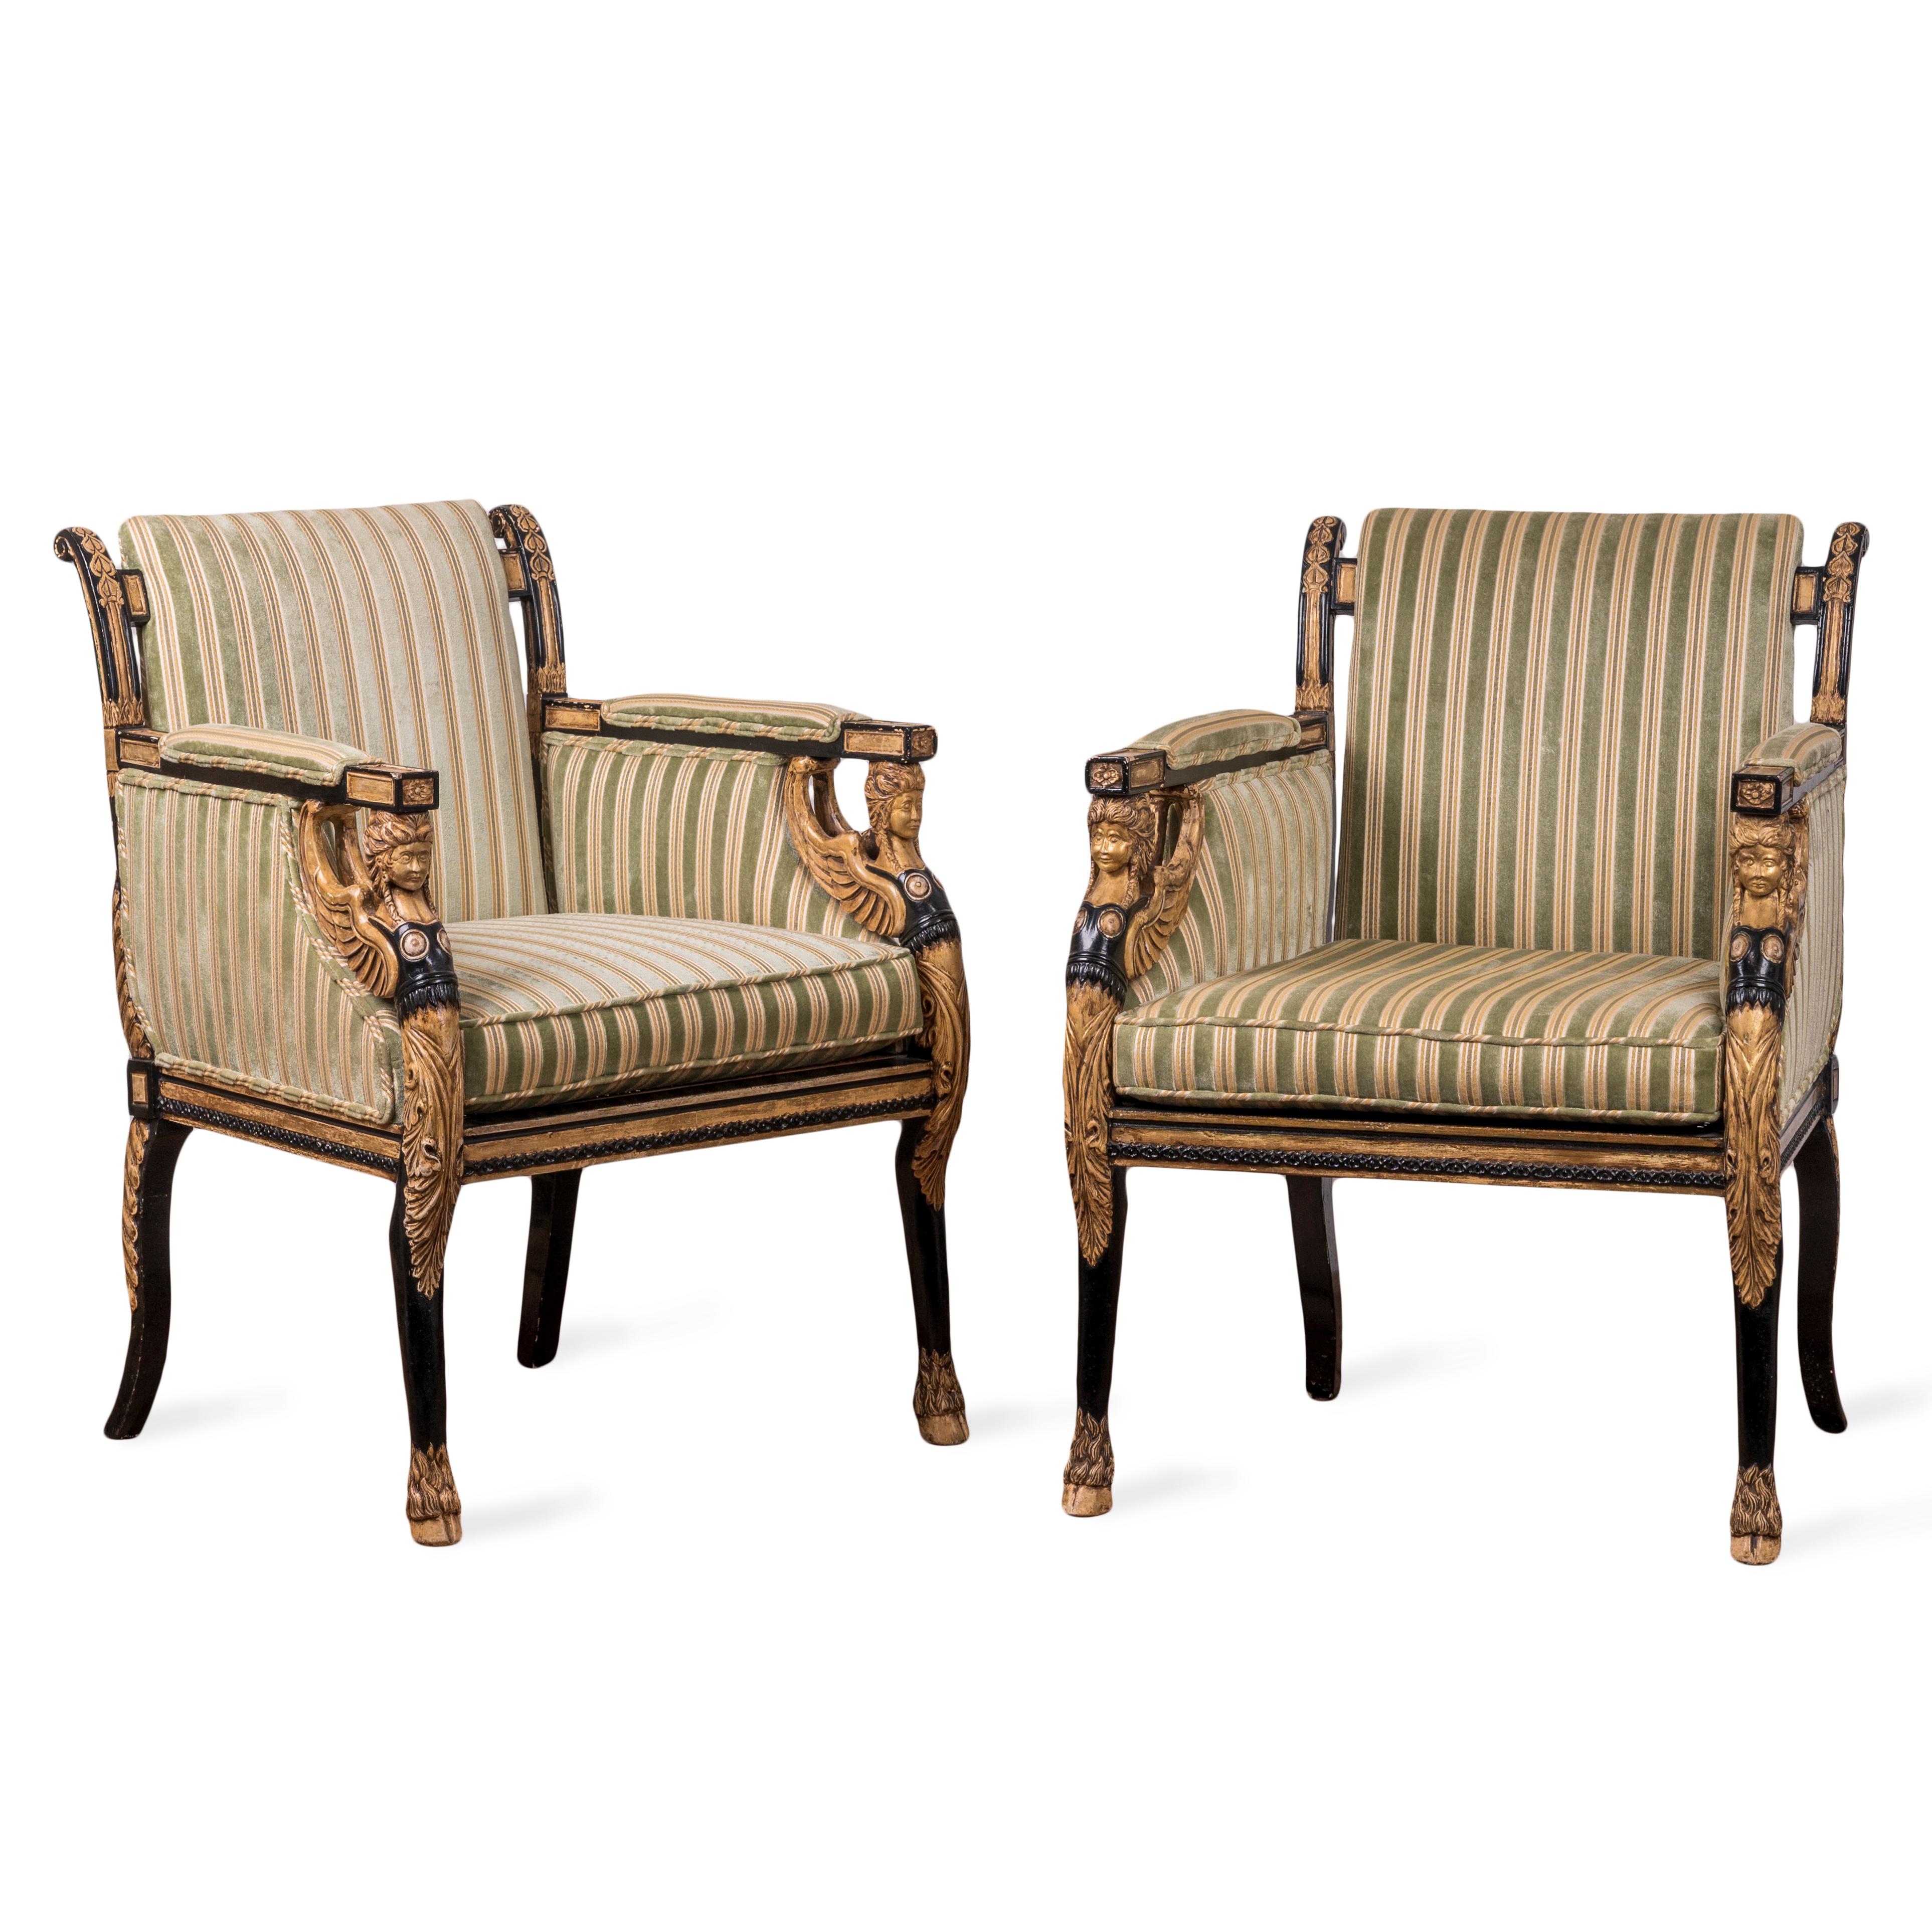 Ein Paar englische ebonisierte und paketvergoldete Sessel im Regency-Stil von Burton-Ching Ltd. aus dem 20. Jahrhundert.

26 Zoll breit, 26 Zoll tief und 35 Zoll hoch

Sitzhöhe 19 Zoll; Armhöhe 27 ½ Zoll 
